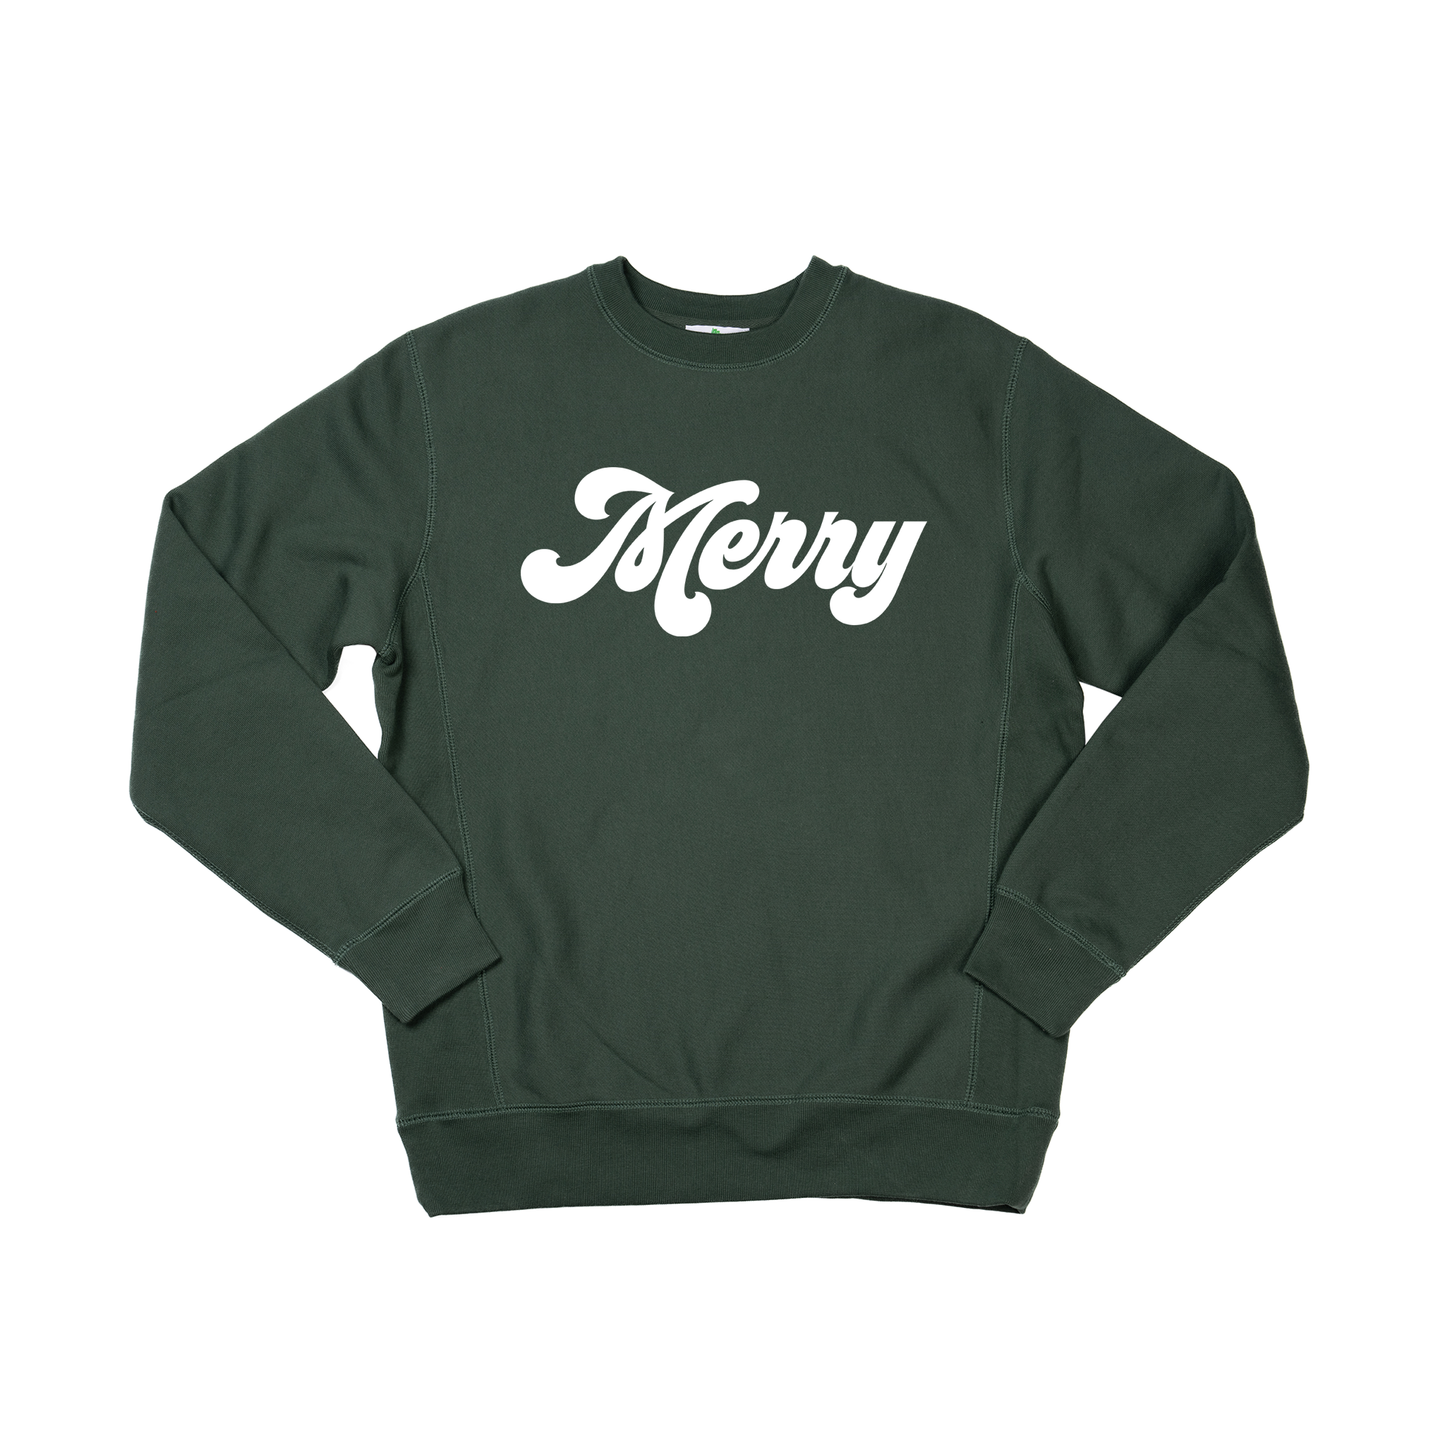 Merry (Retro, White) - Heavyweight Sweatshirt (Pine)